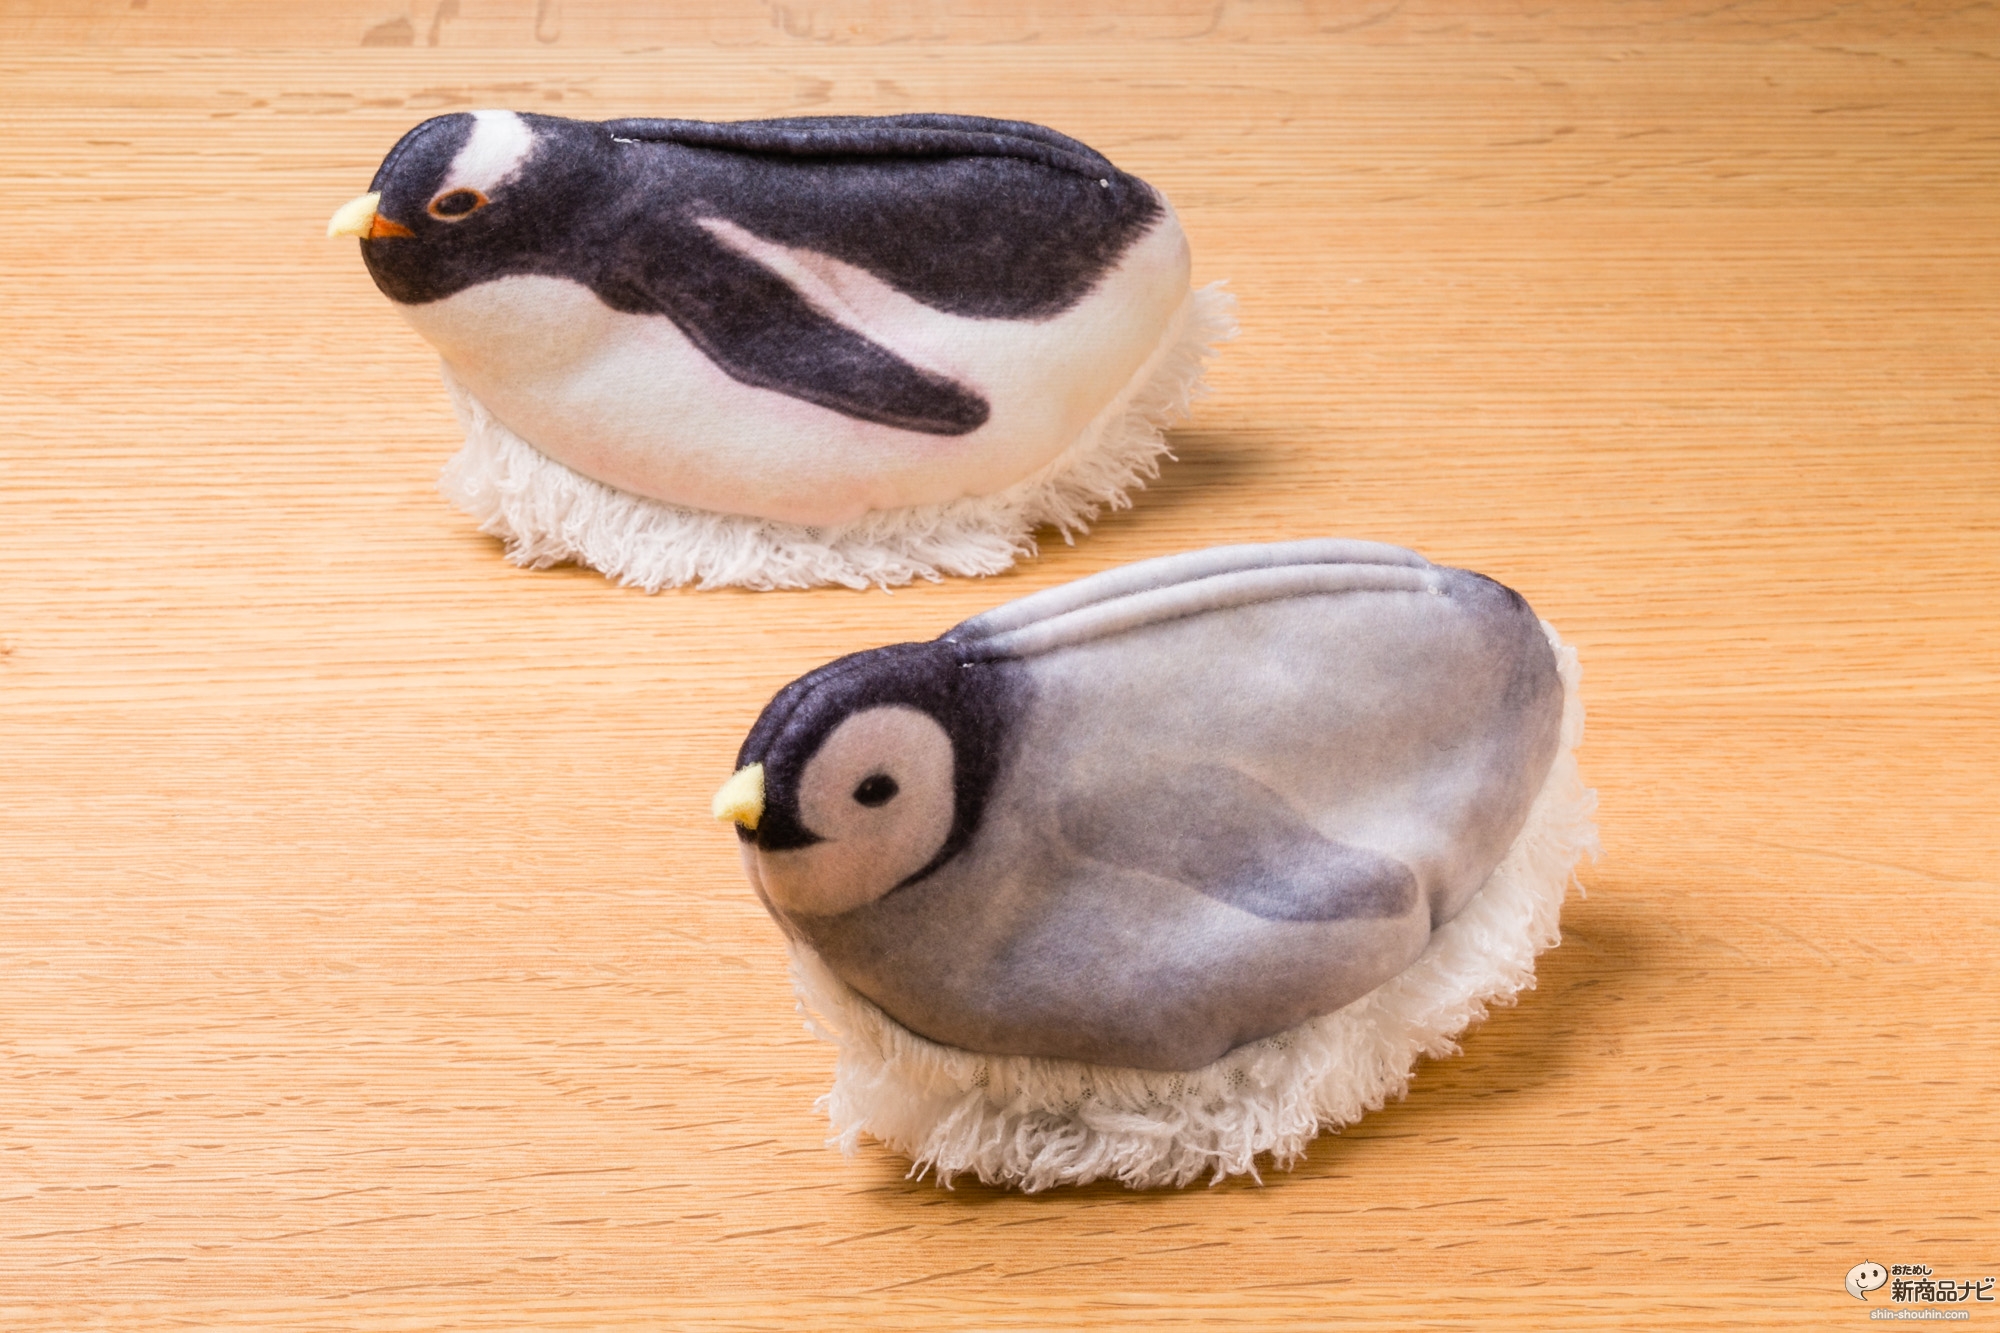 おためし新商品ナビ Blog Archive 卓上が氷上になる ペンギンスルスルー ミニ の会 オフィスで渇いた心を癒すペンギン 型クリーナー